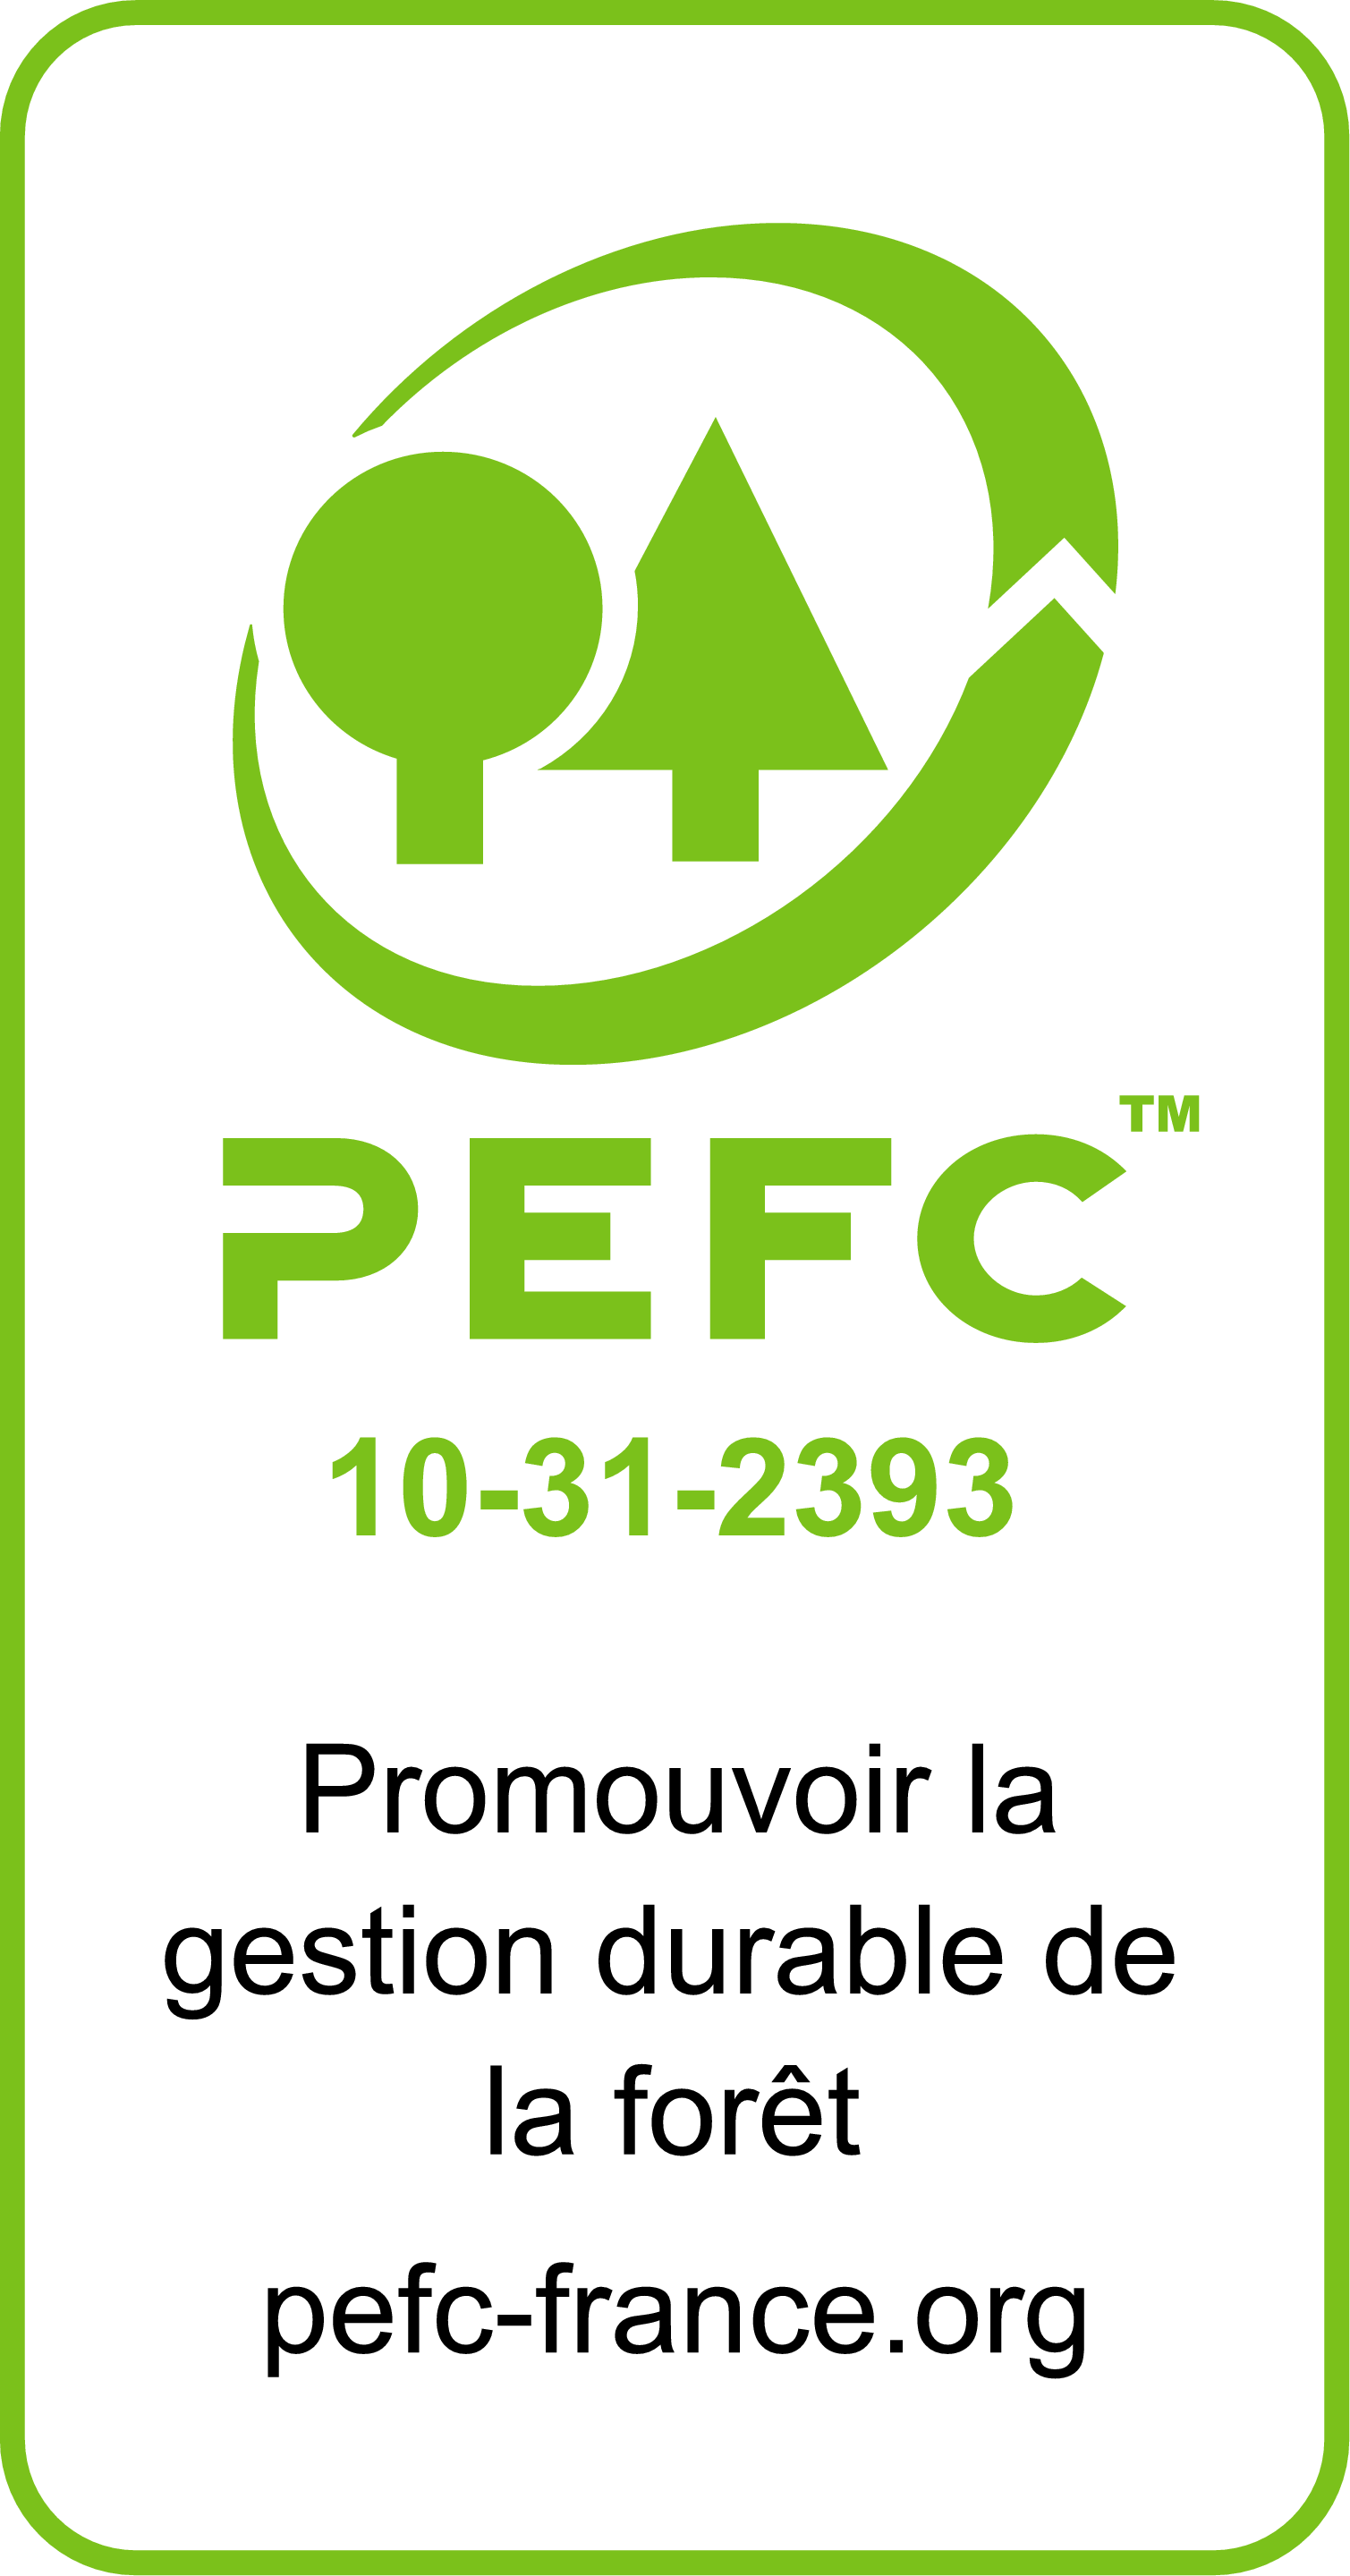 pefc logo long vert